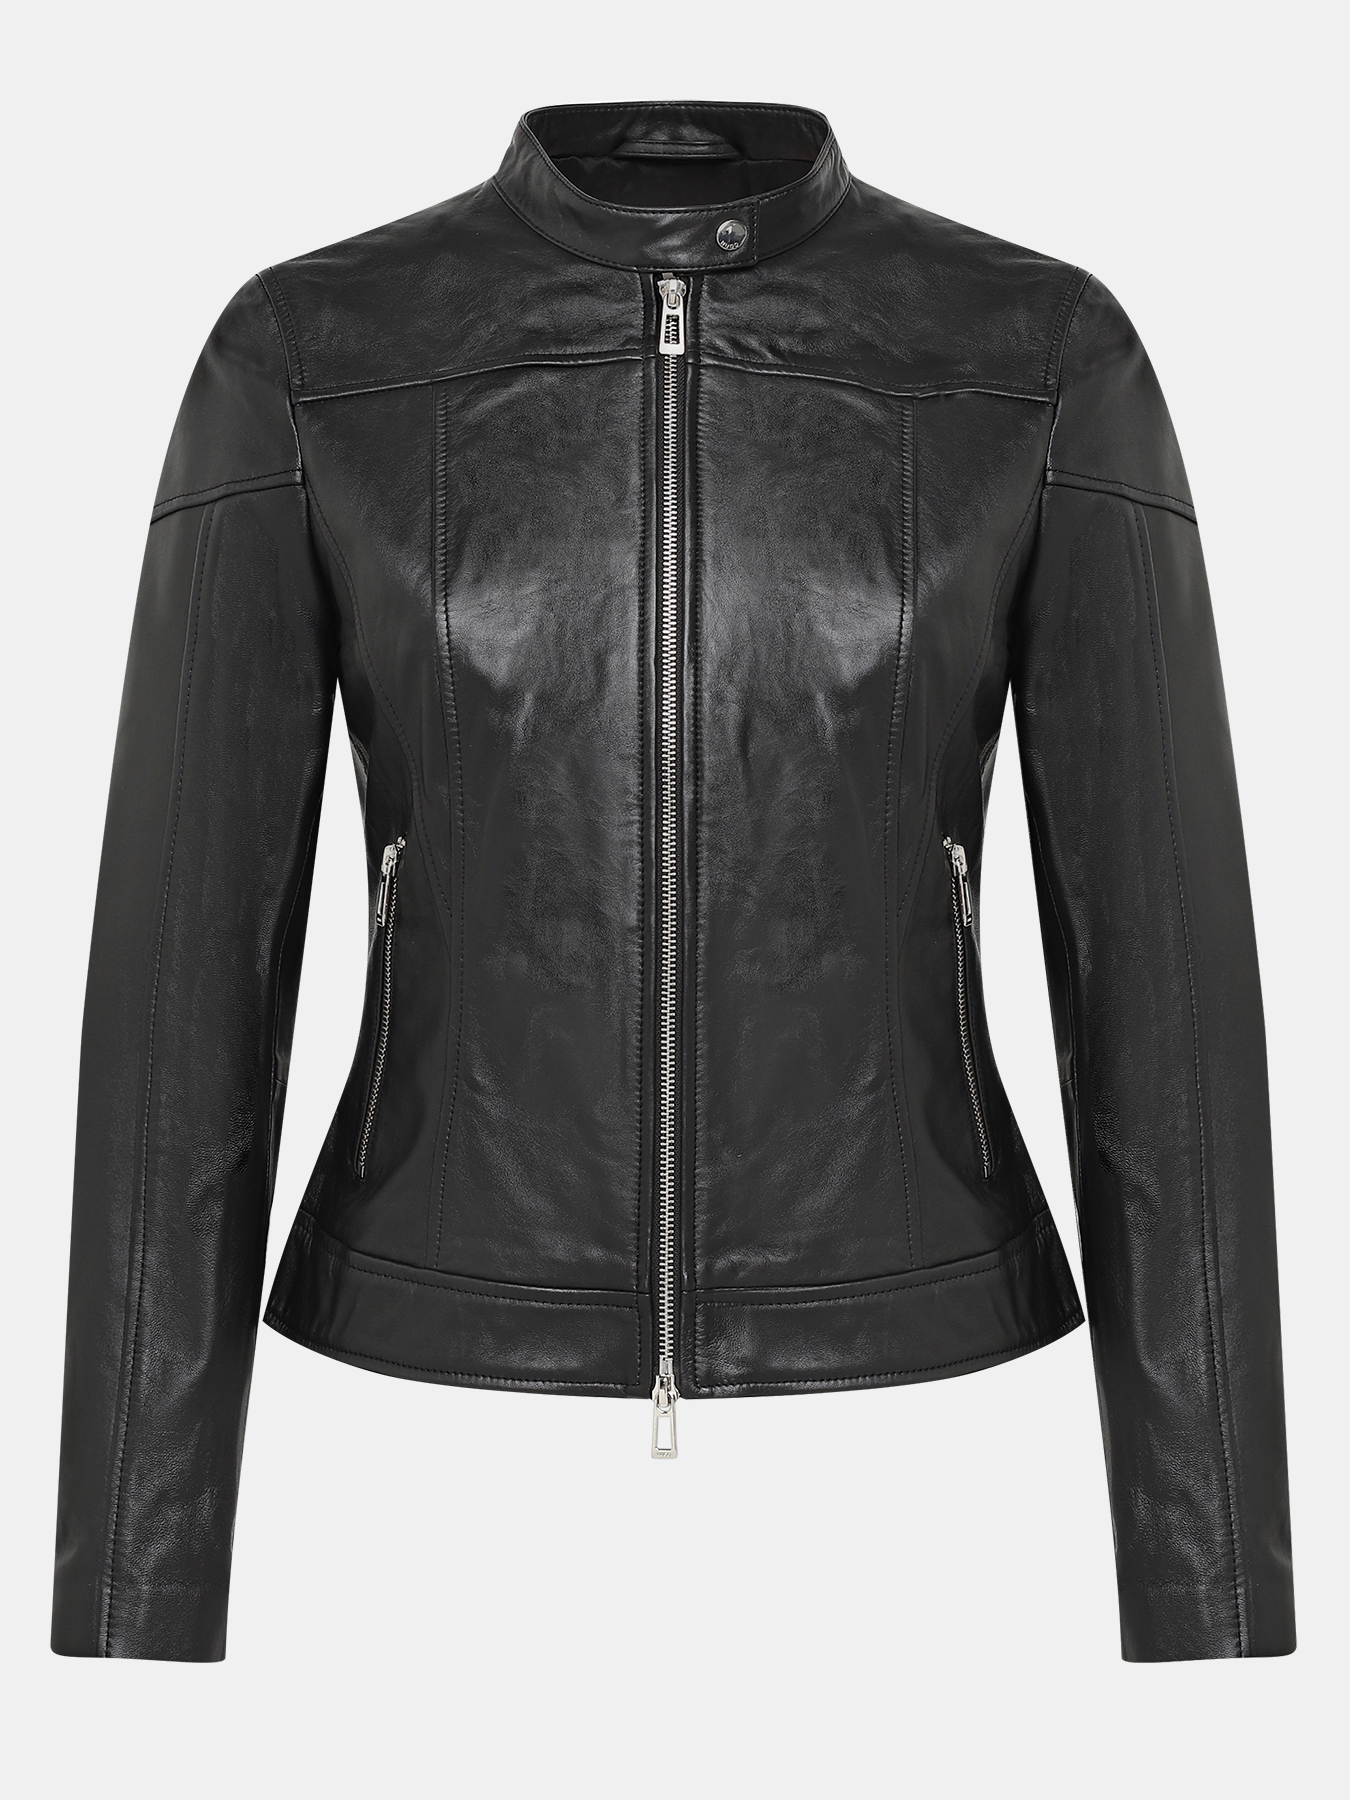 Кожаная куртка Lasena HUGO 406511-045, цвет черный, размер 48-50